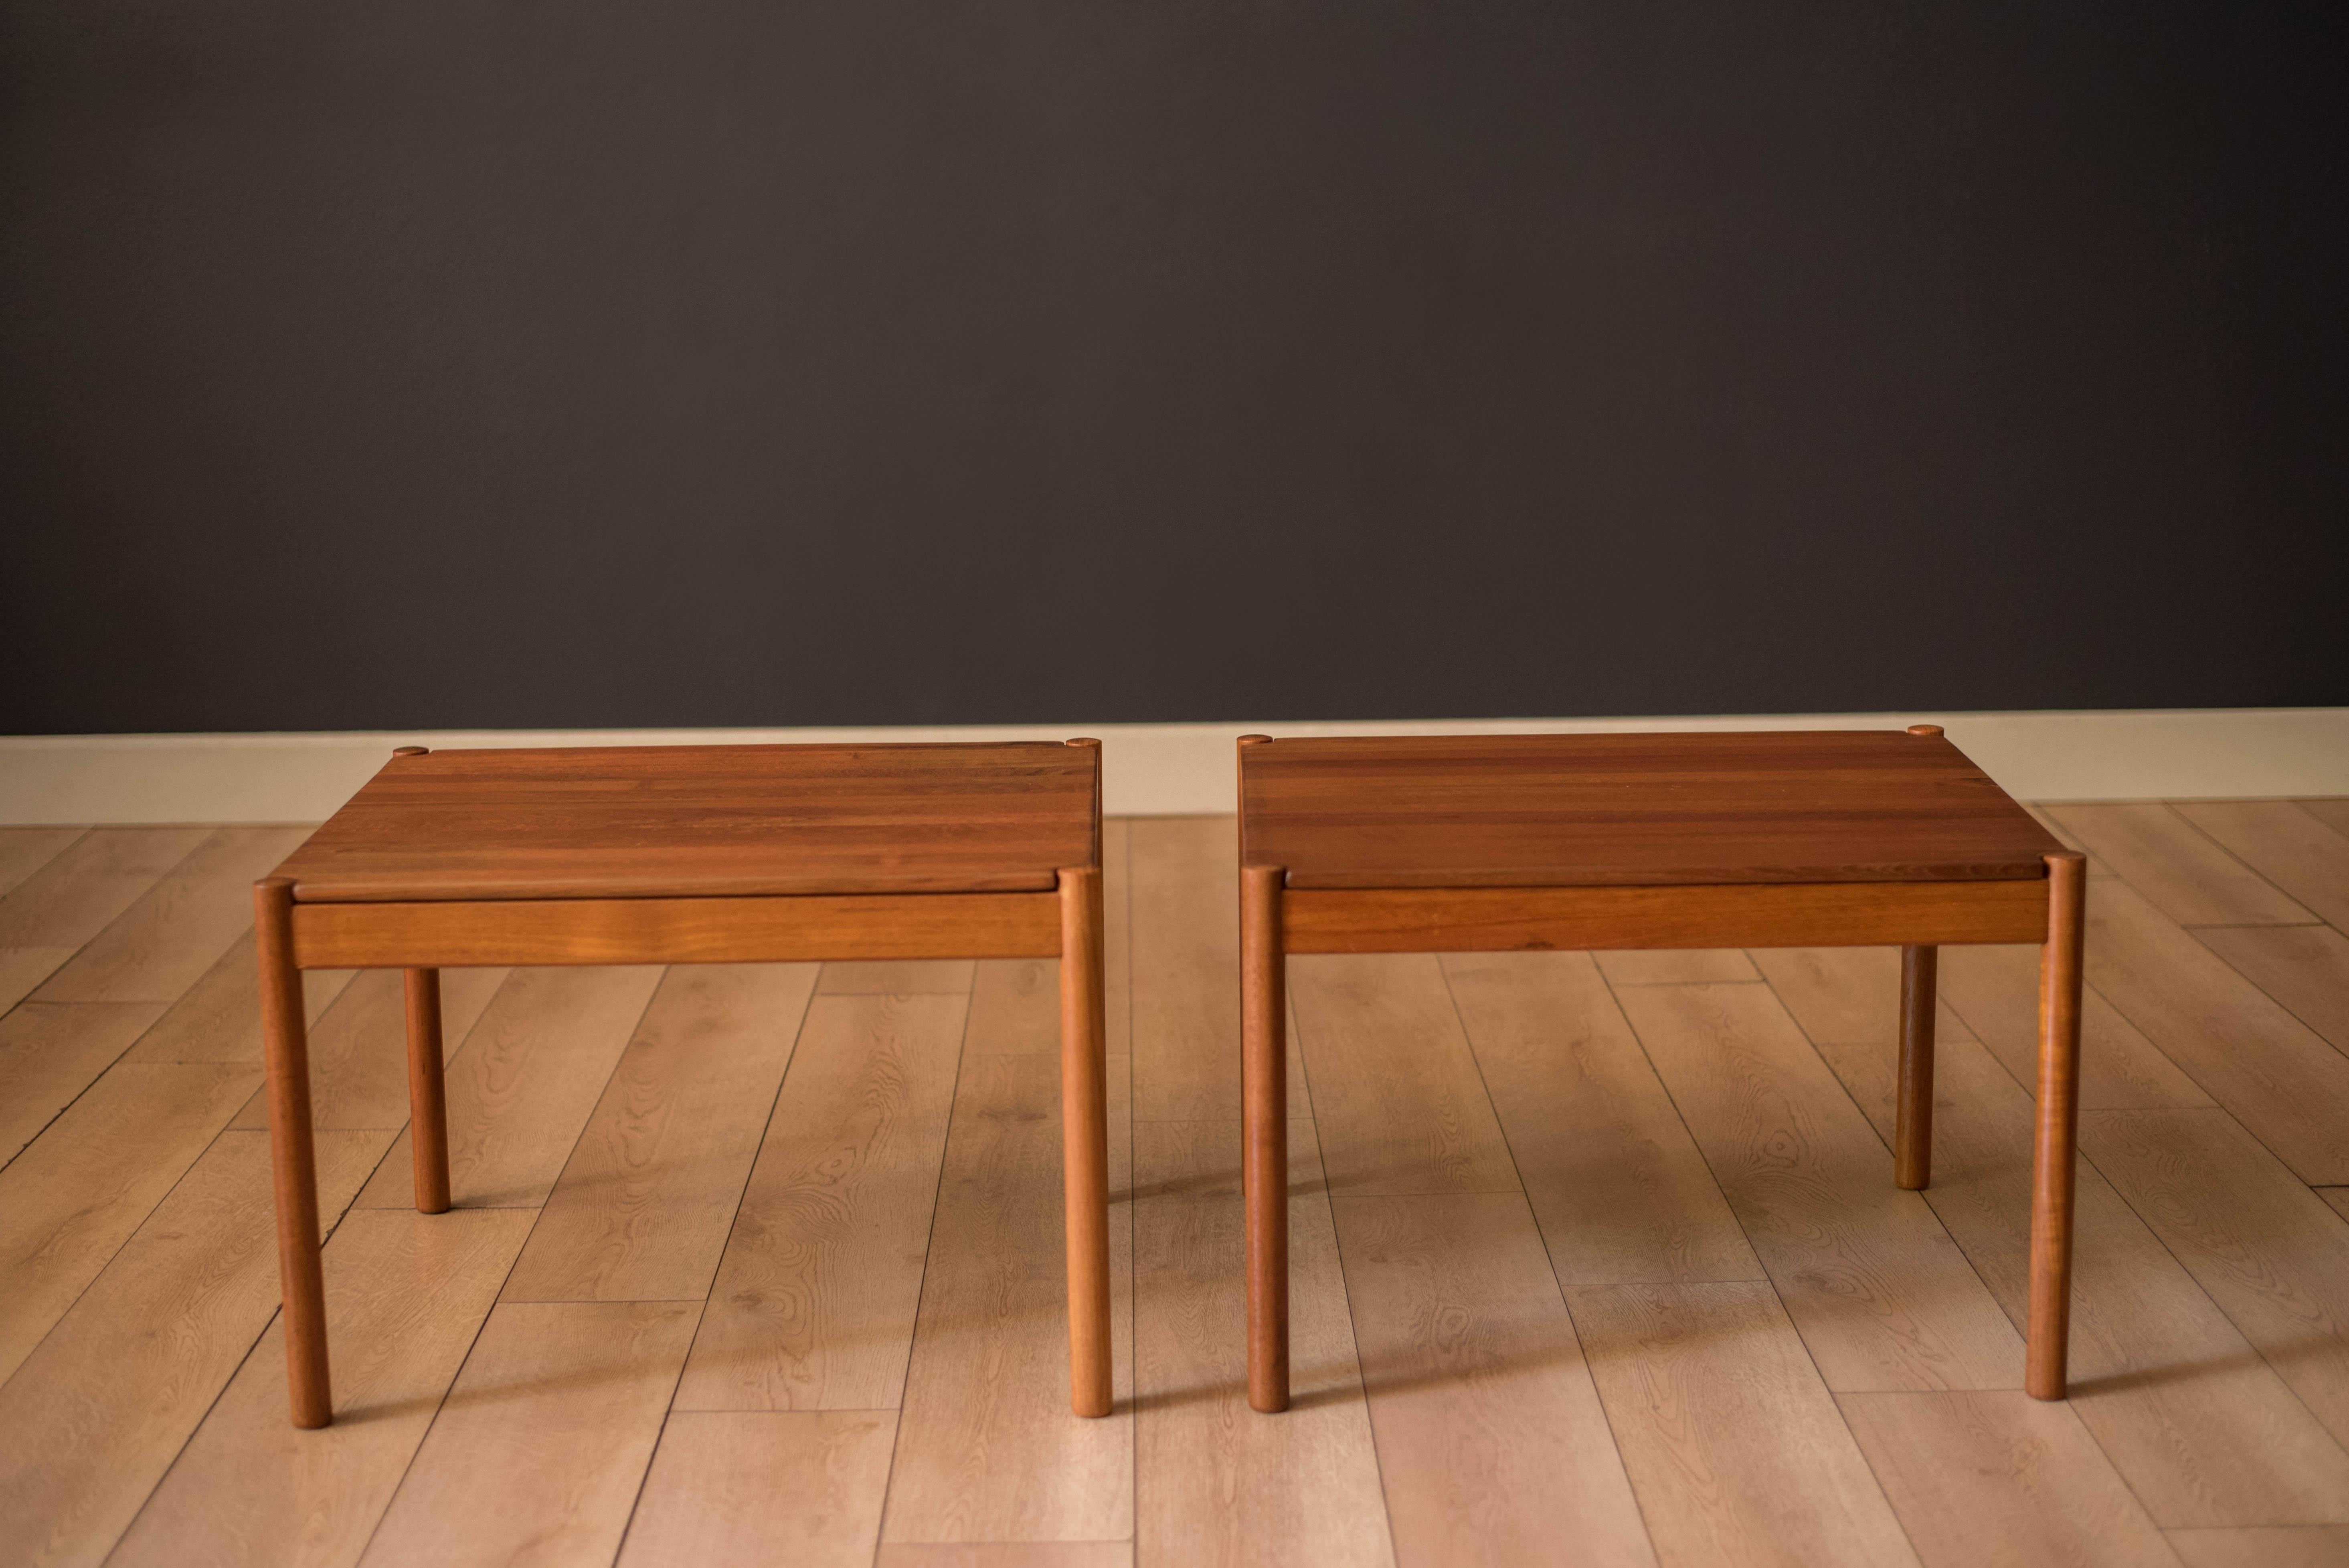 Modernes Beistelltischpaar aus der Mitte des Jahrhunderts, hergestellt von Magnus Olesen, Durup, ca. 1960er Jahre. Mit massiven, geplankten Teakholz-Tischplatten und klassischen, abgerundeten Beinen. Dieses Set kann als Sofatisch im Wohnzimmer oder